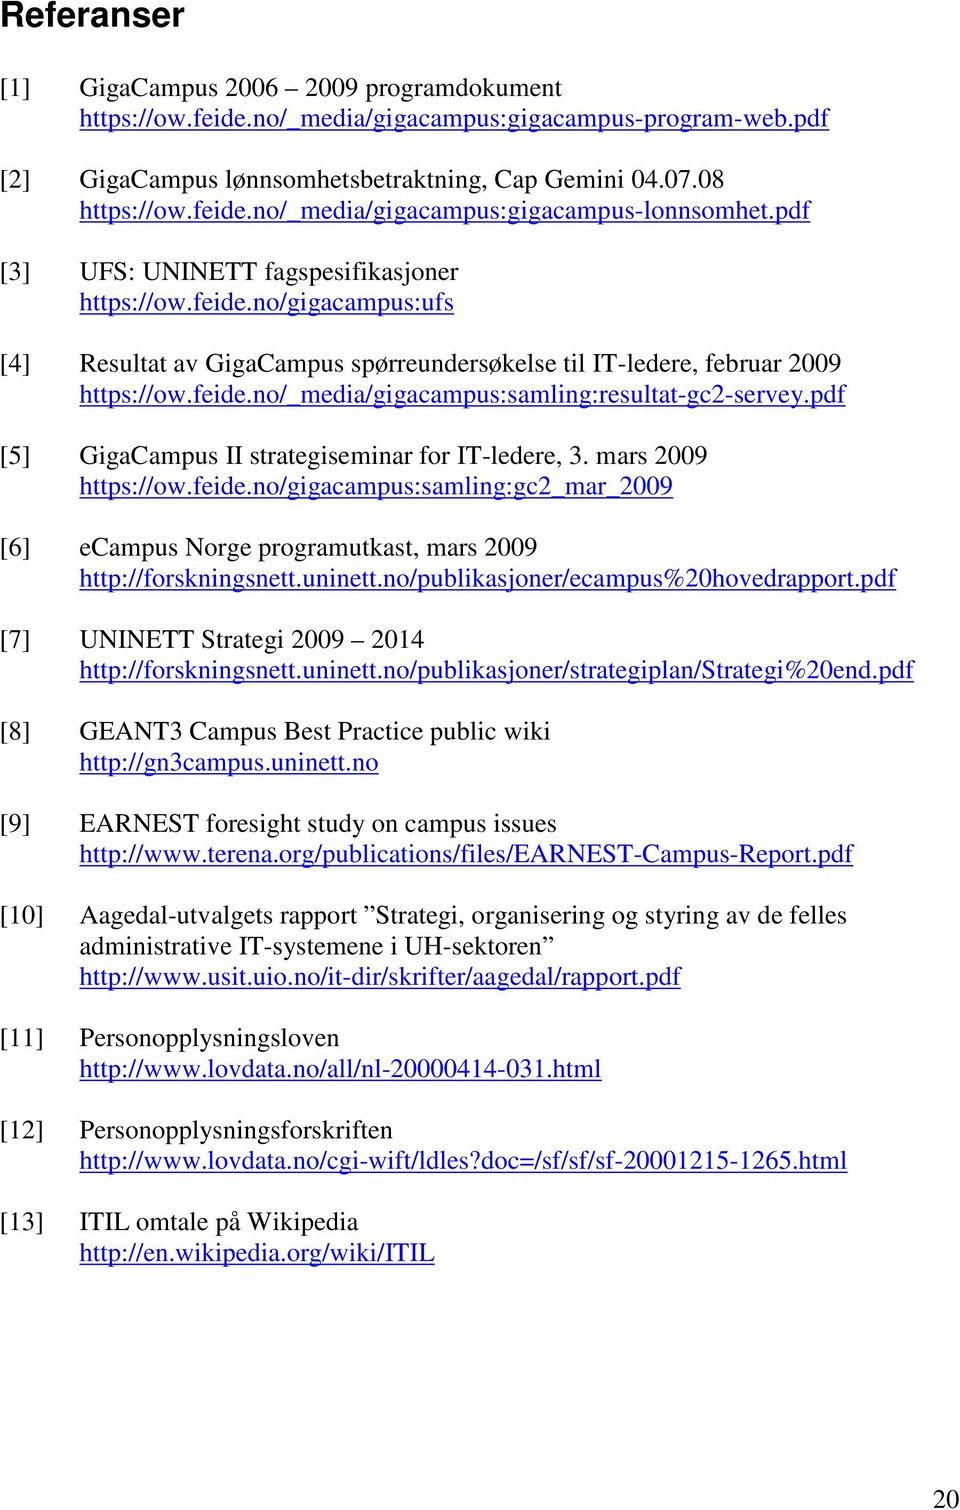 pdf [5] GigaCampus II strategiseminar for IT-ledere, 3. mars 2009 https://ow.feide.no/gigacampus:samling:gc2_mar_2009 [6] ecampus Norge programutkast, mars 2009 http://forskningsnett.uninett.